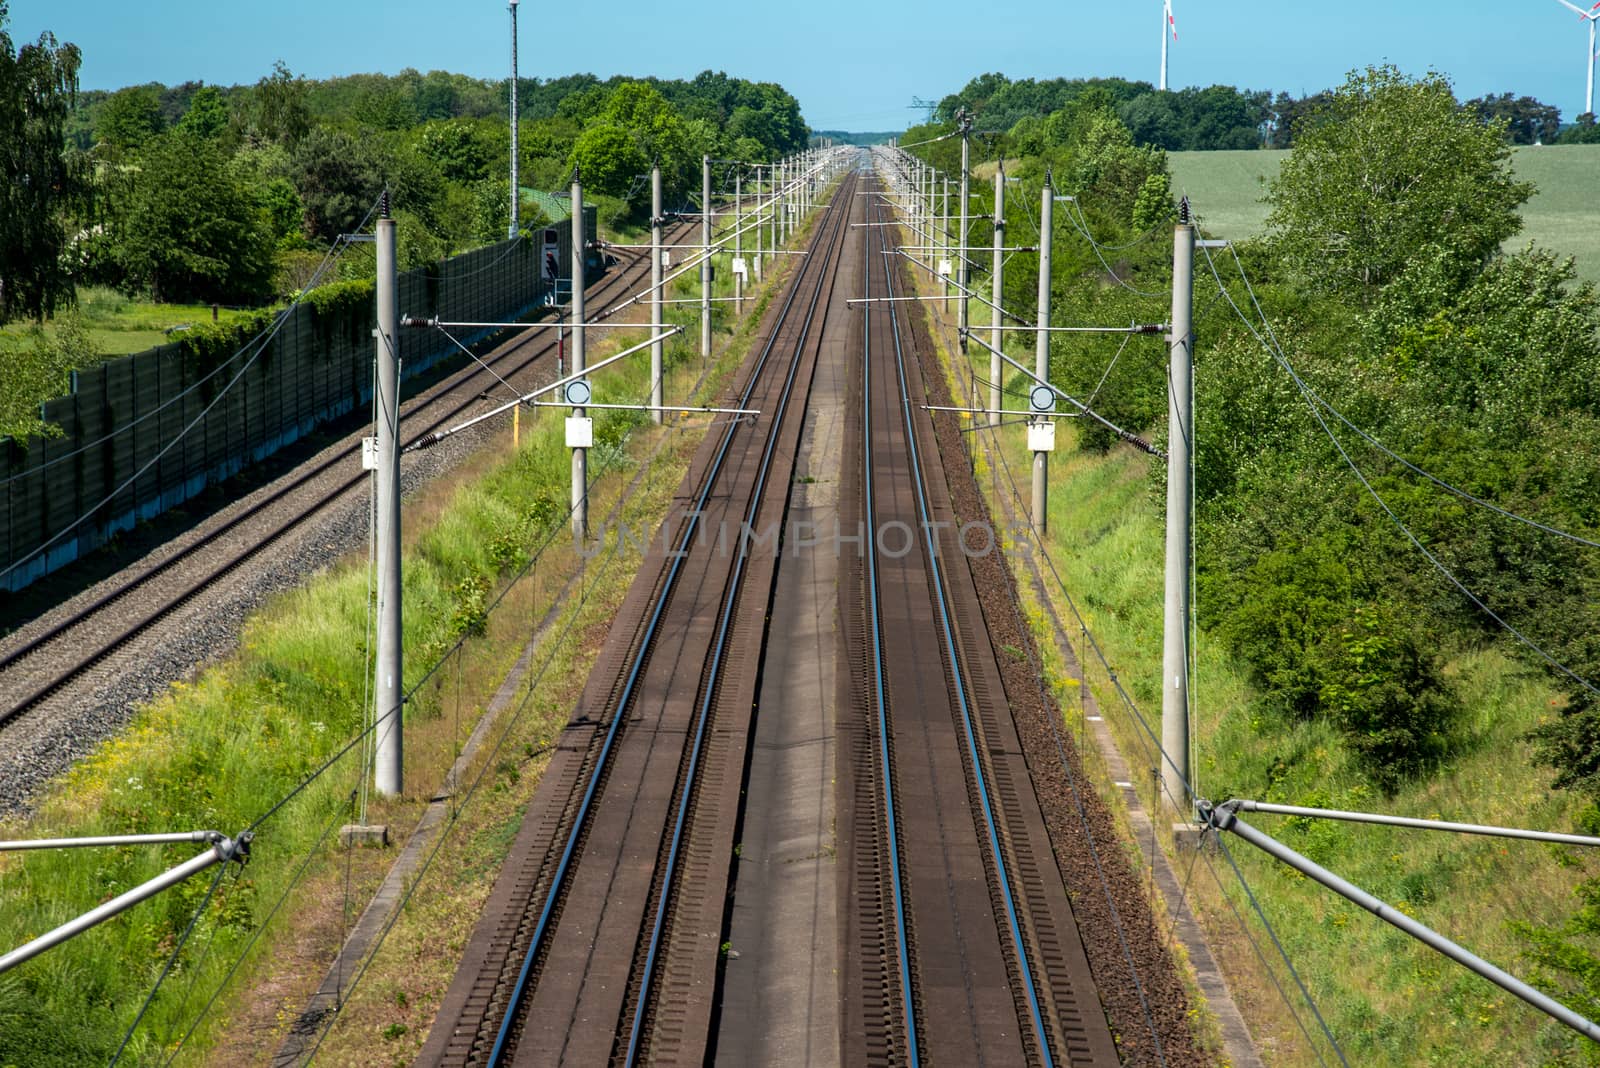 Railroad tracks in Germany by elxeneize